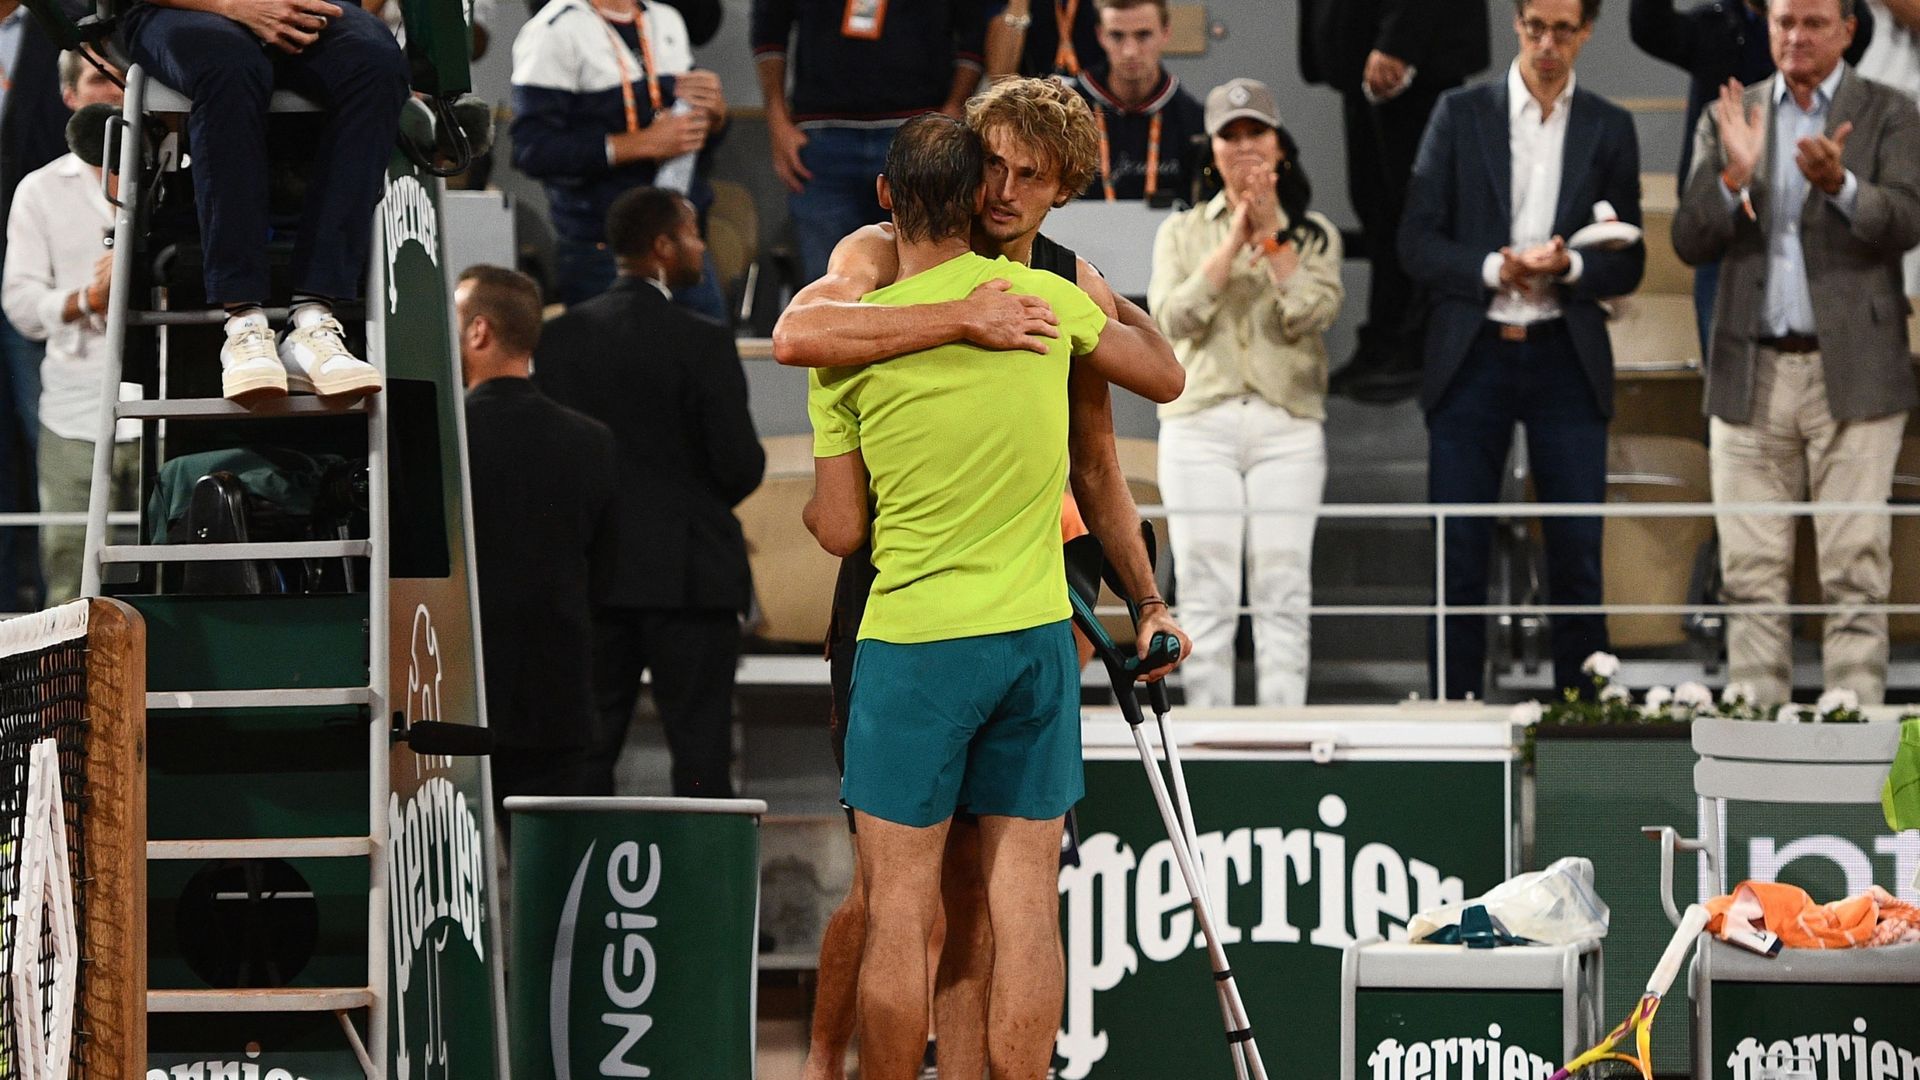 L'accolade entre Rafael Nadal et Alexander Zverev après l'abandon de l'Allemand